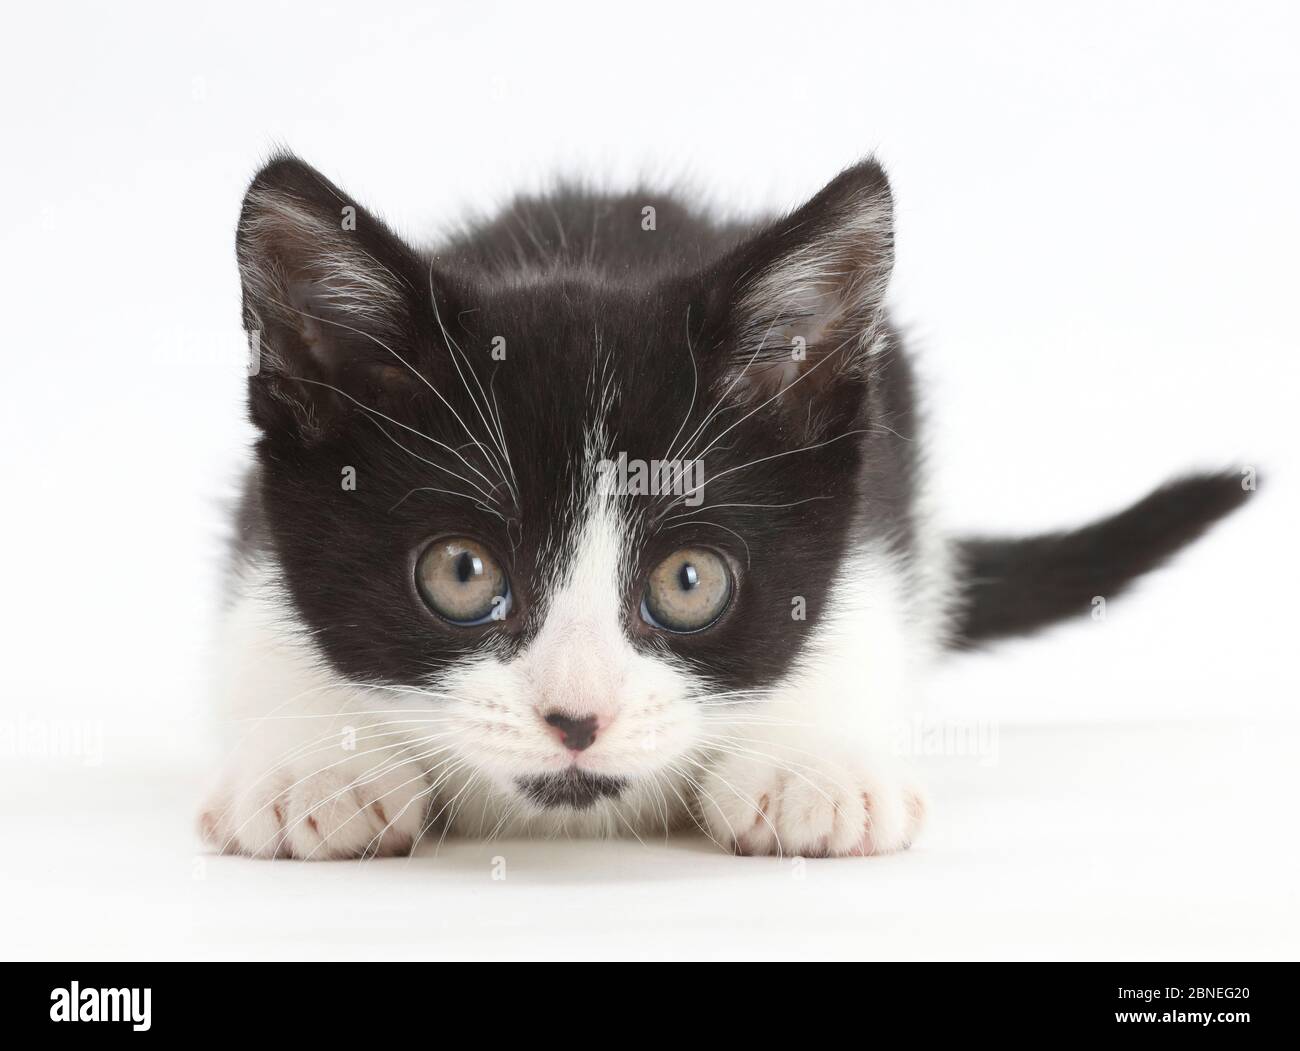 Schwarz-weiß Kätzchen, Loona, Alter 11 Wochen, starrend aufmerksam. Stockfoto